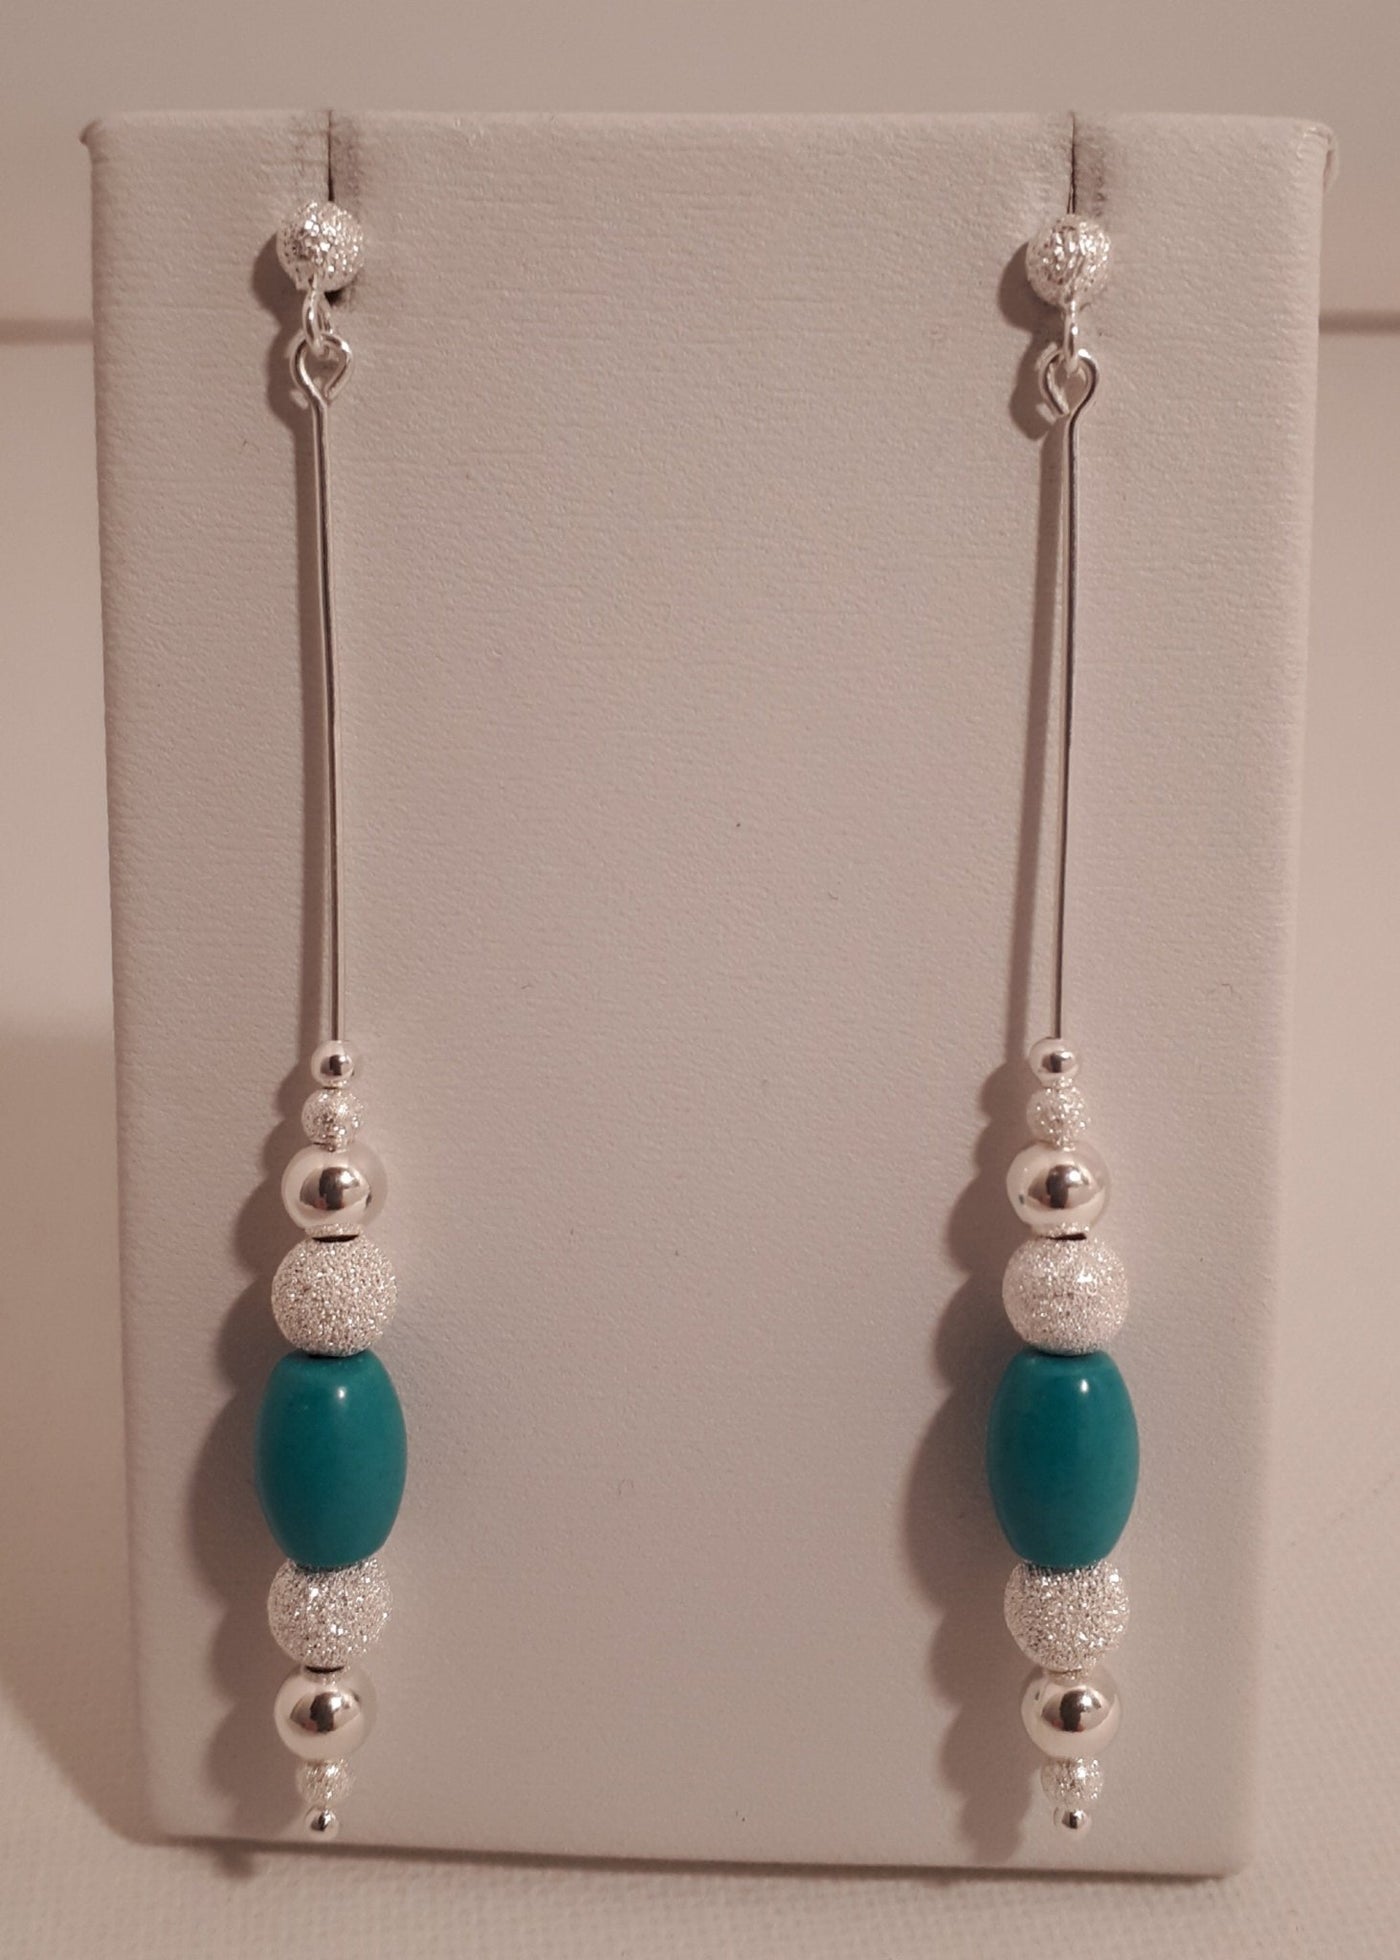 925 Sterling Silver Long Drop Turquoise & Stardust Bead Earrings. - JOANNE MASSEY ARTISAN JEWELLERY